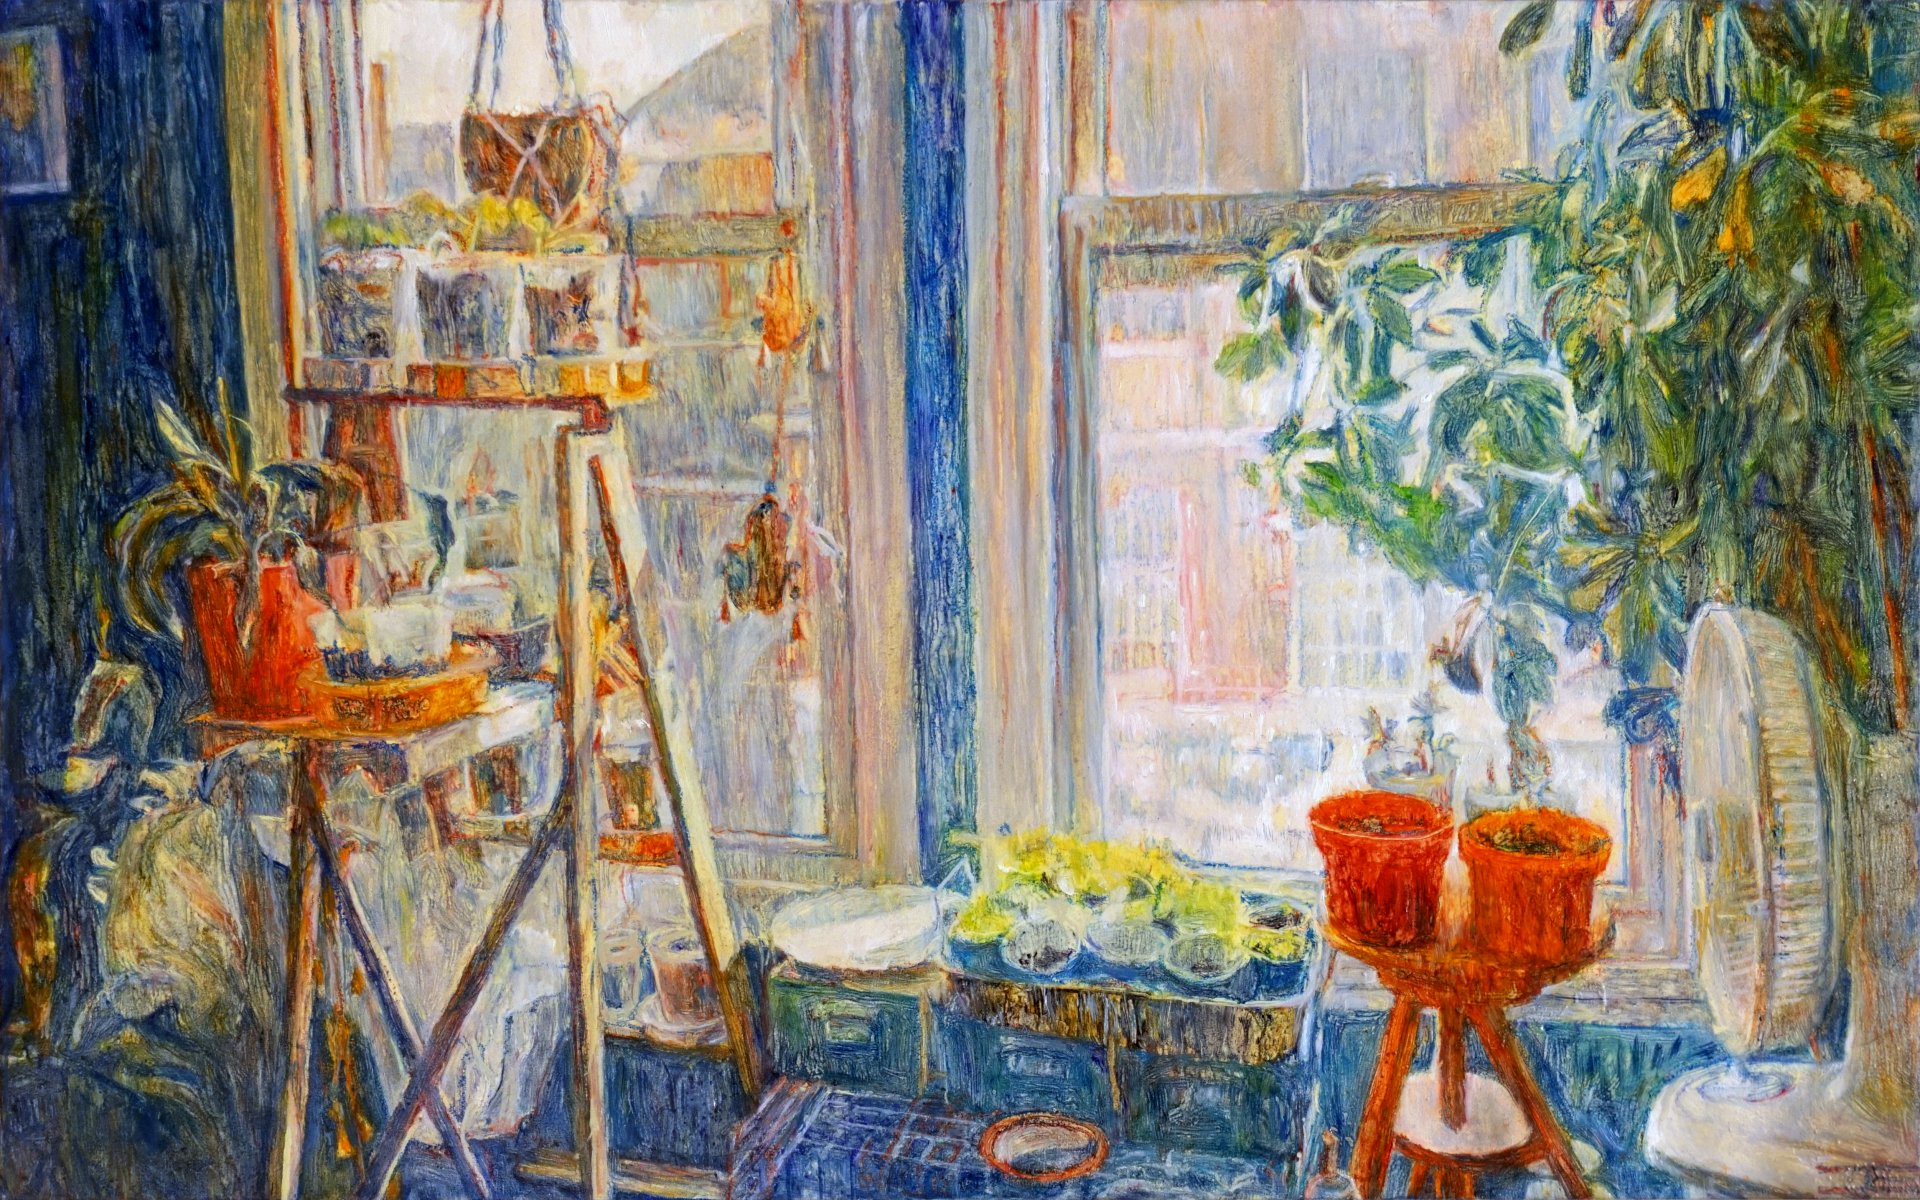 Oil painting by Jeremy Eliosoff, Window Garden, 2021, 48" x 30"